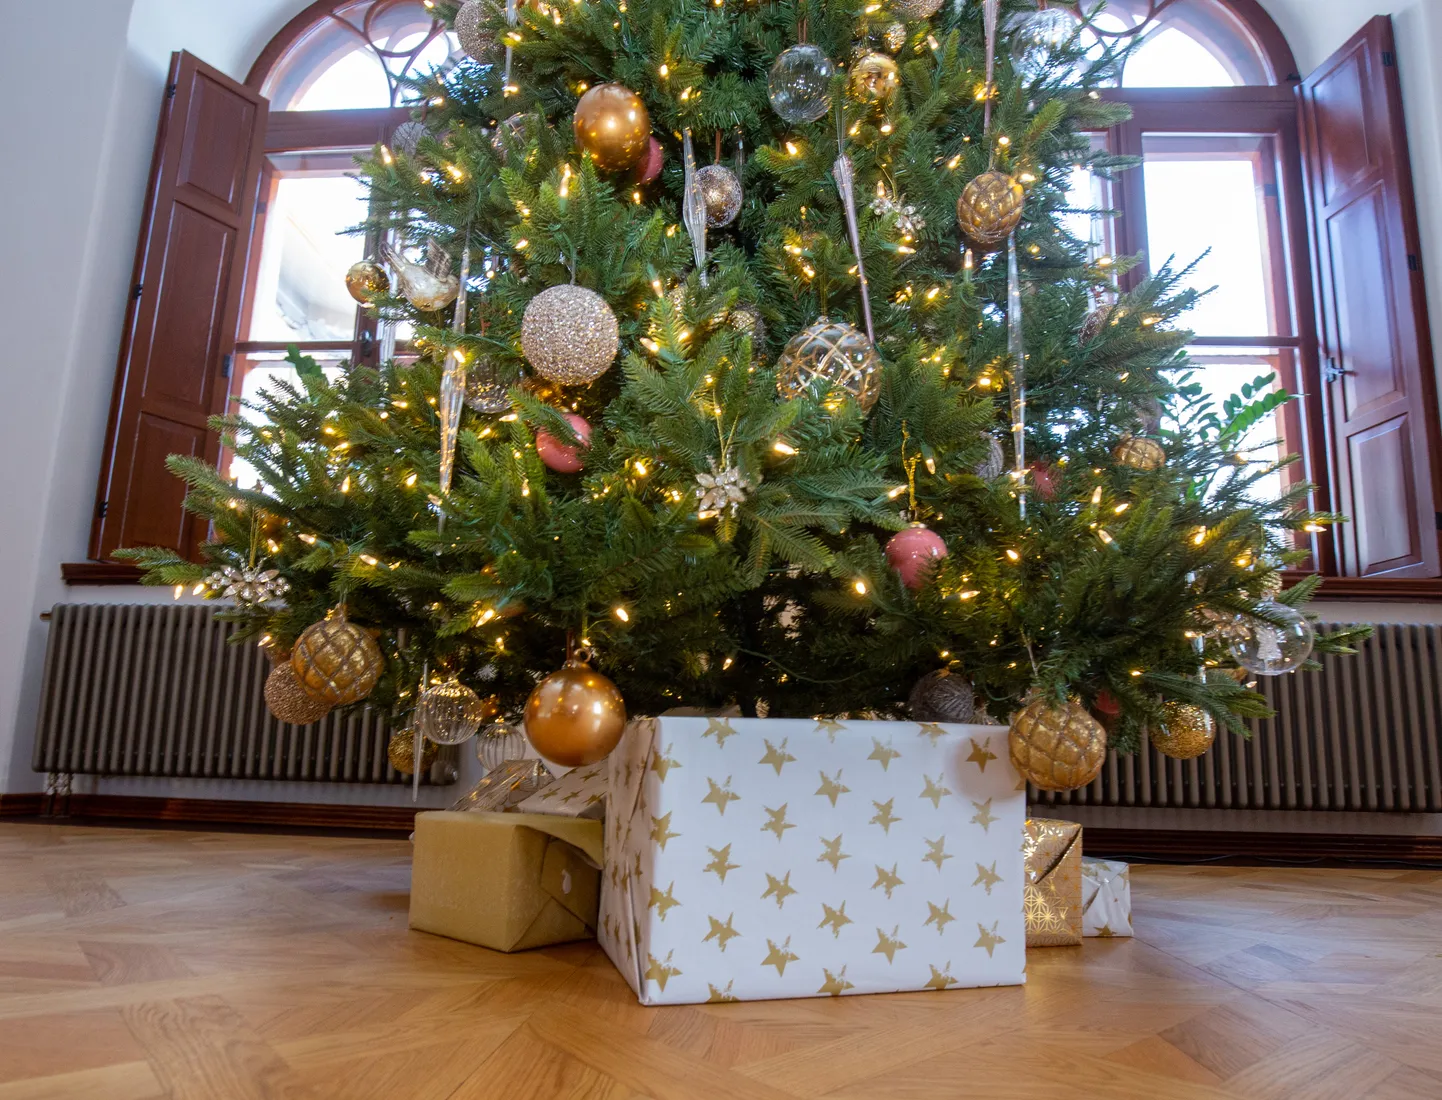 Lätis ulatub tüüpiline jõulukinkide eelarve 100 euro kanti, Leedus ja Eestis kulutatakse aga rohkem.